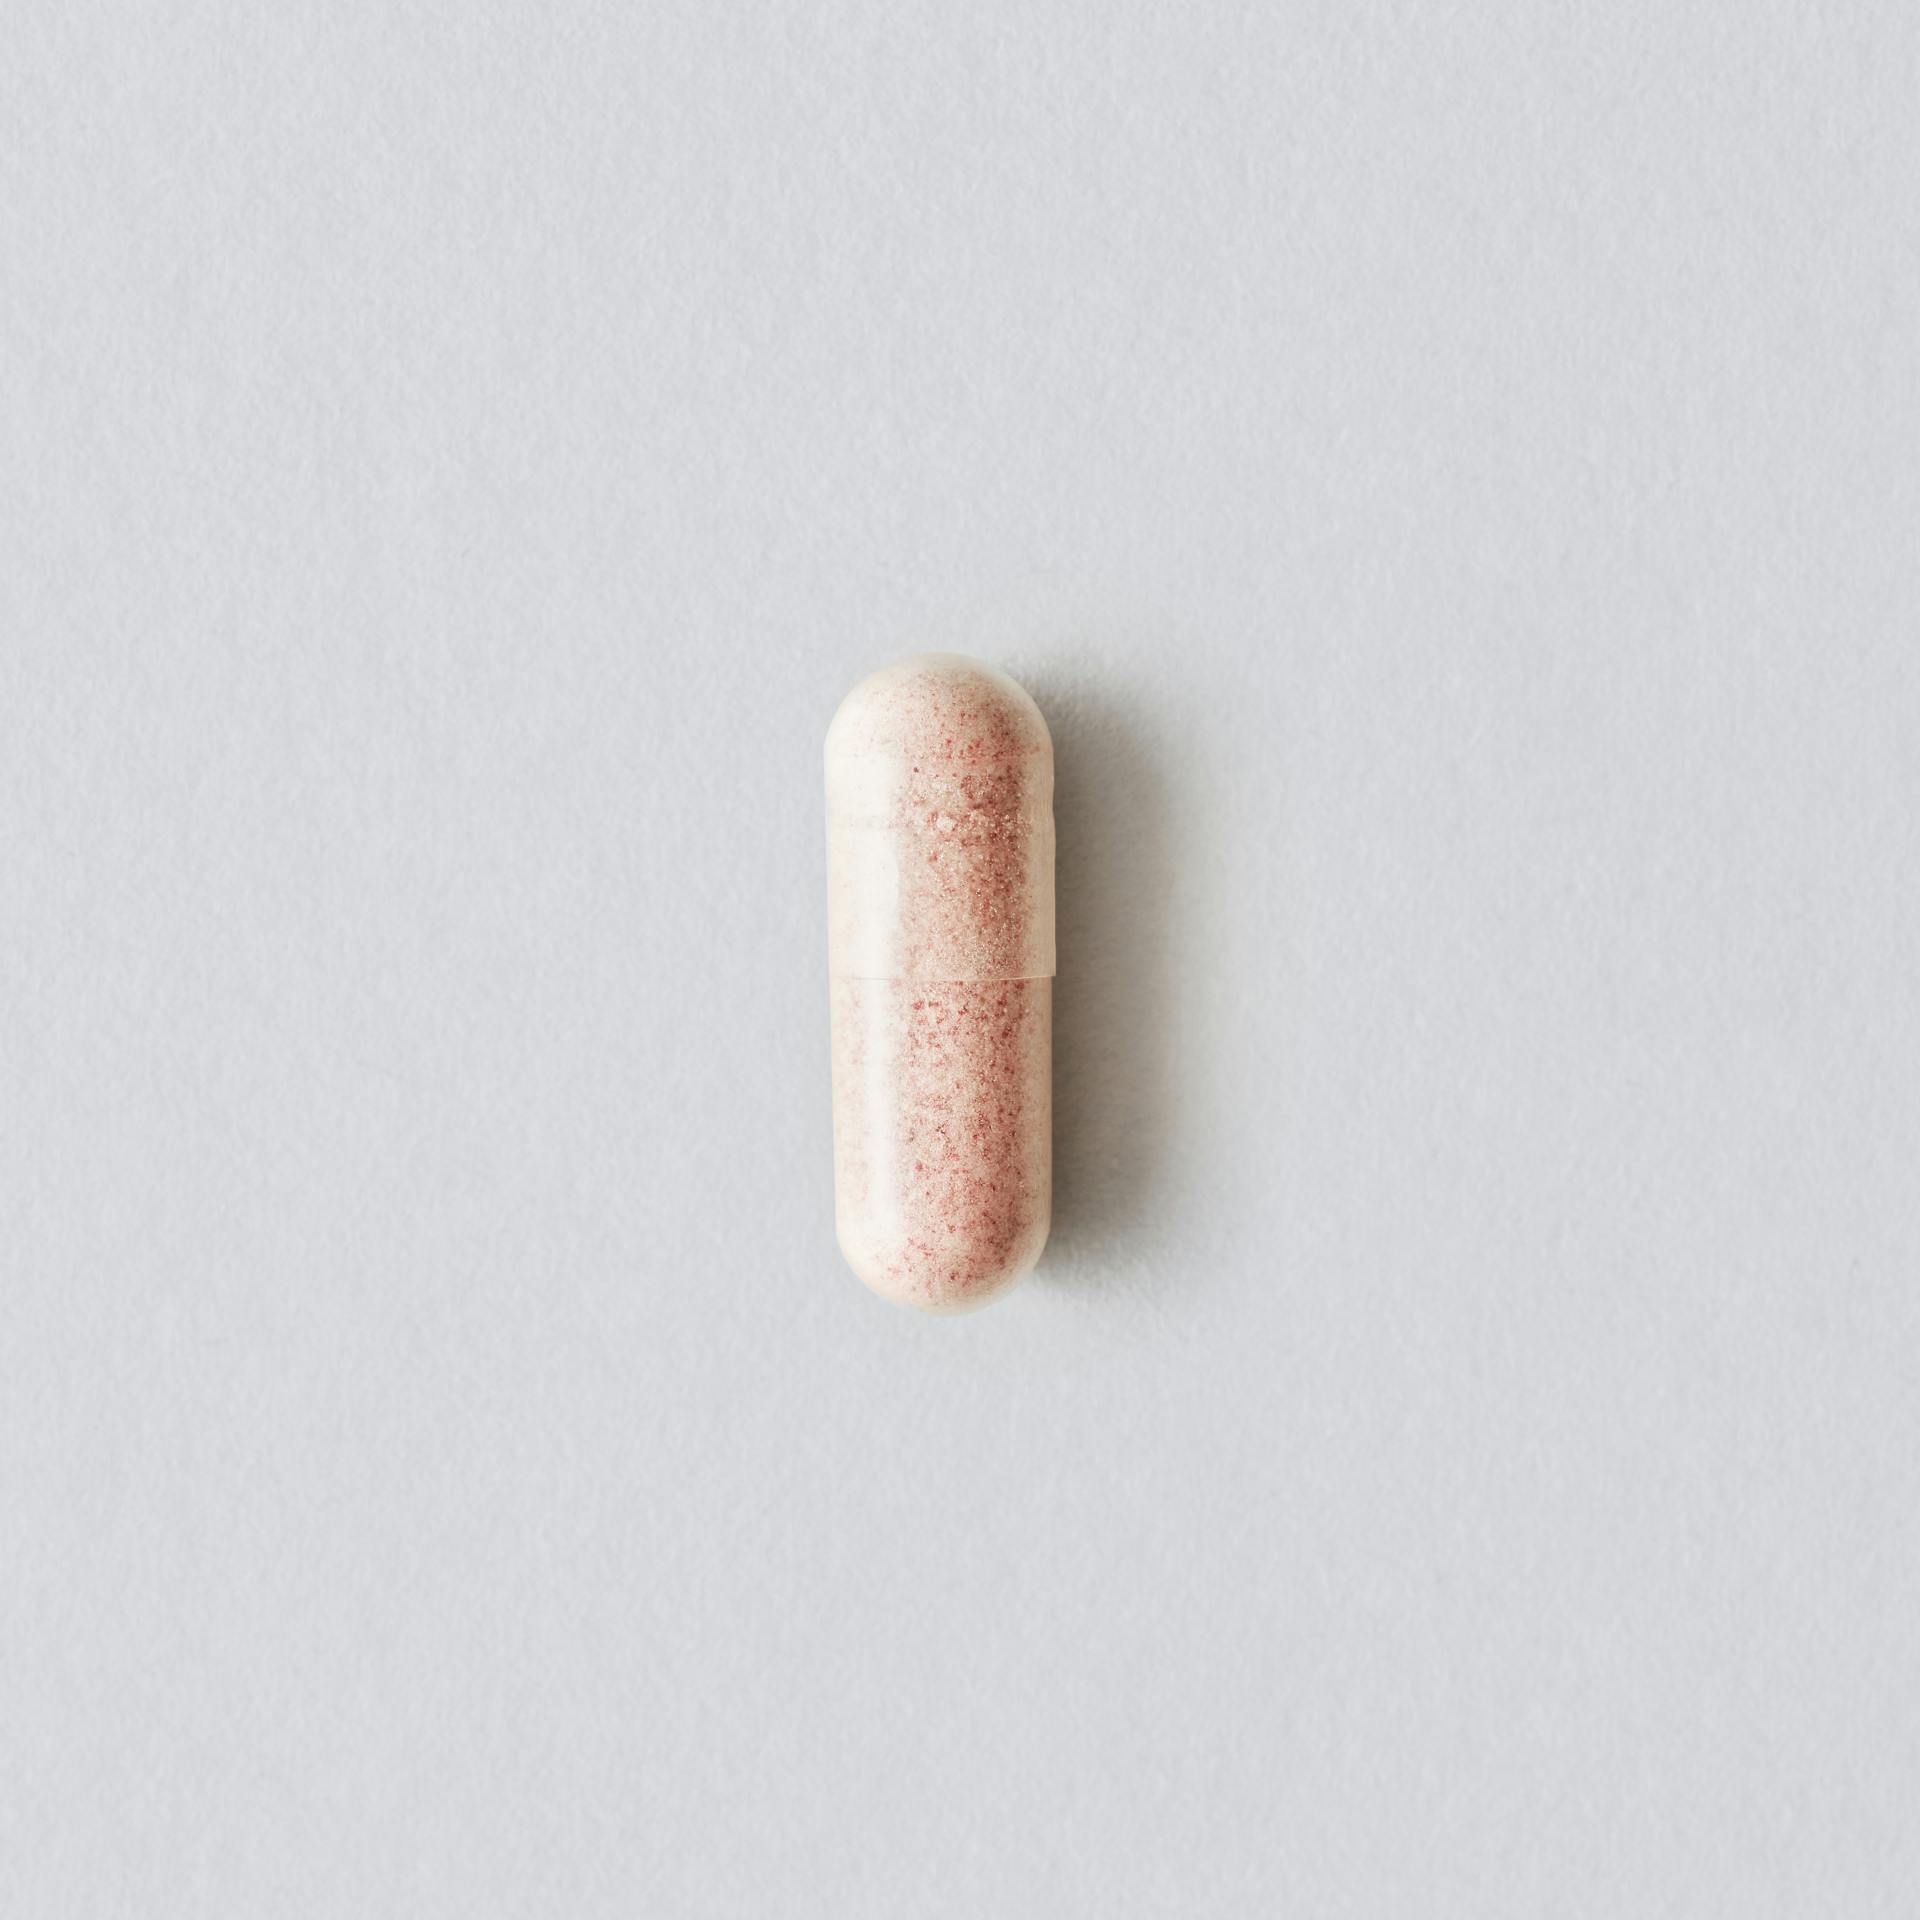 Women's Probiotic veggie capsule product image.